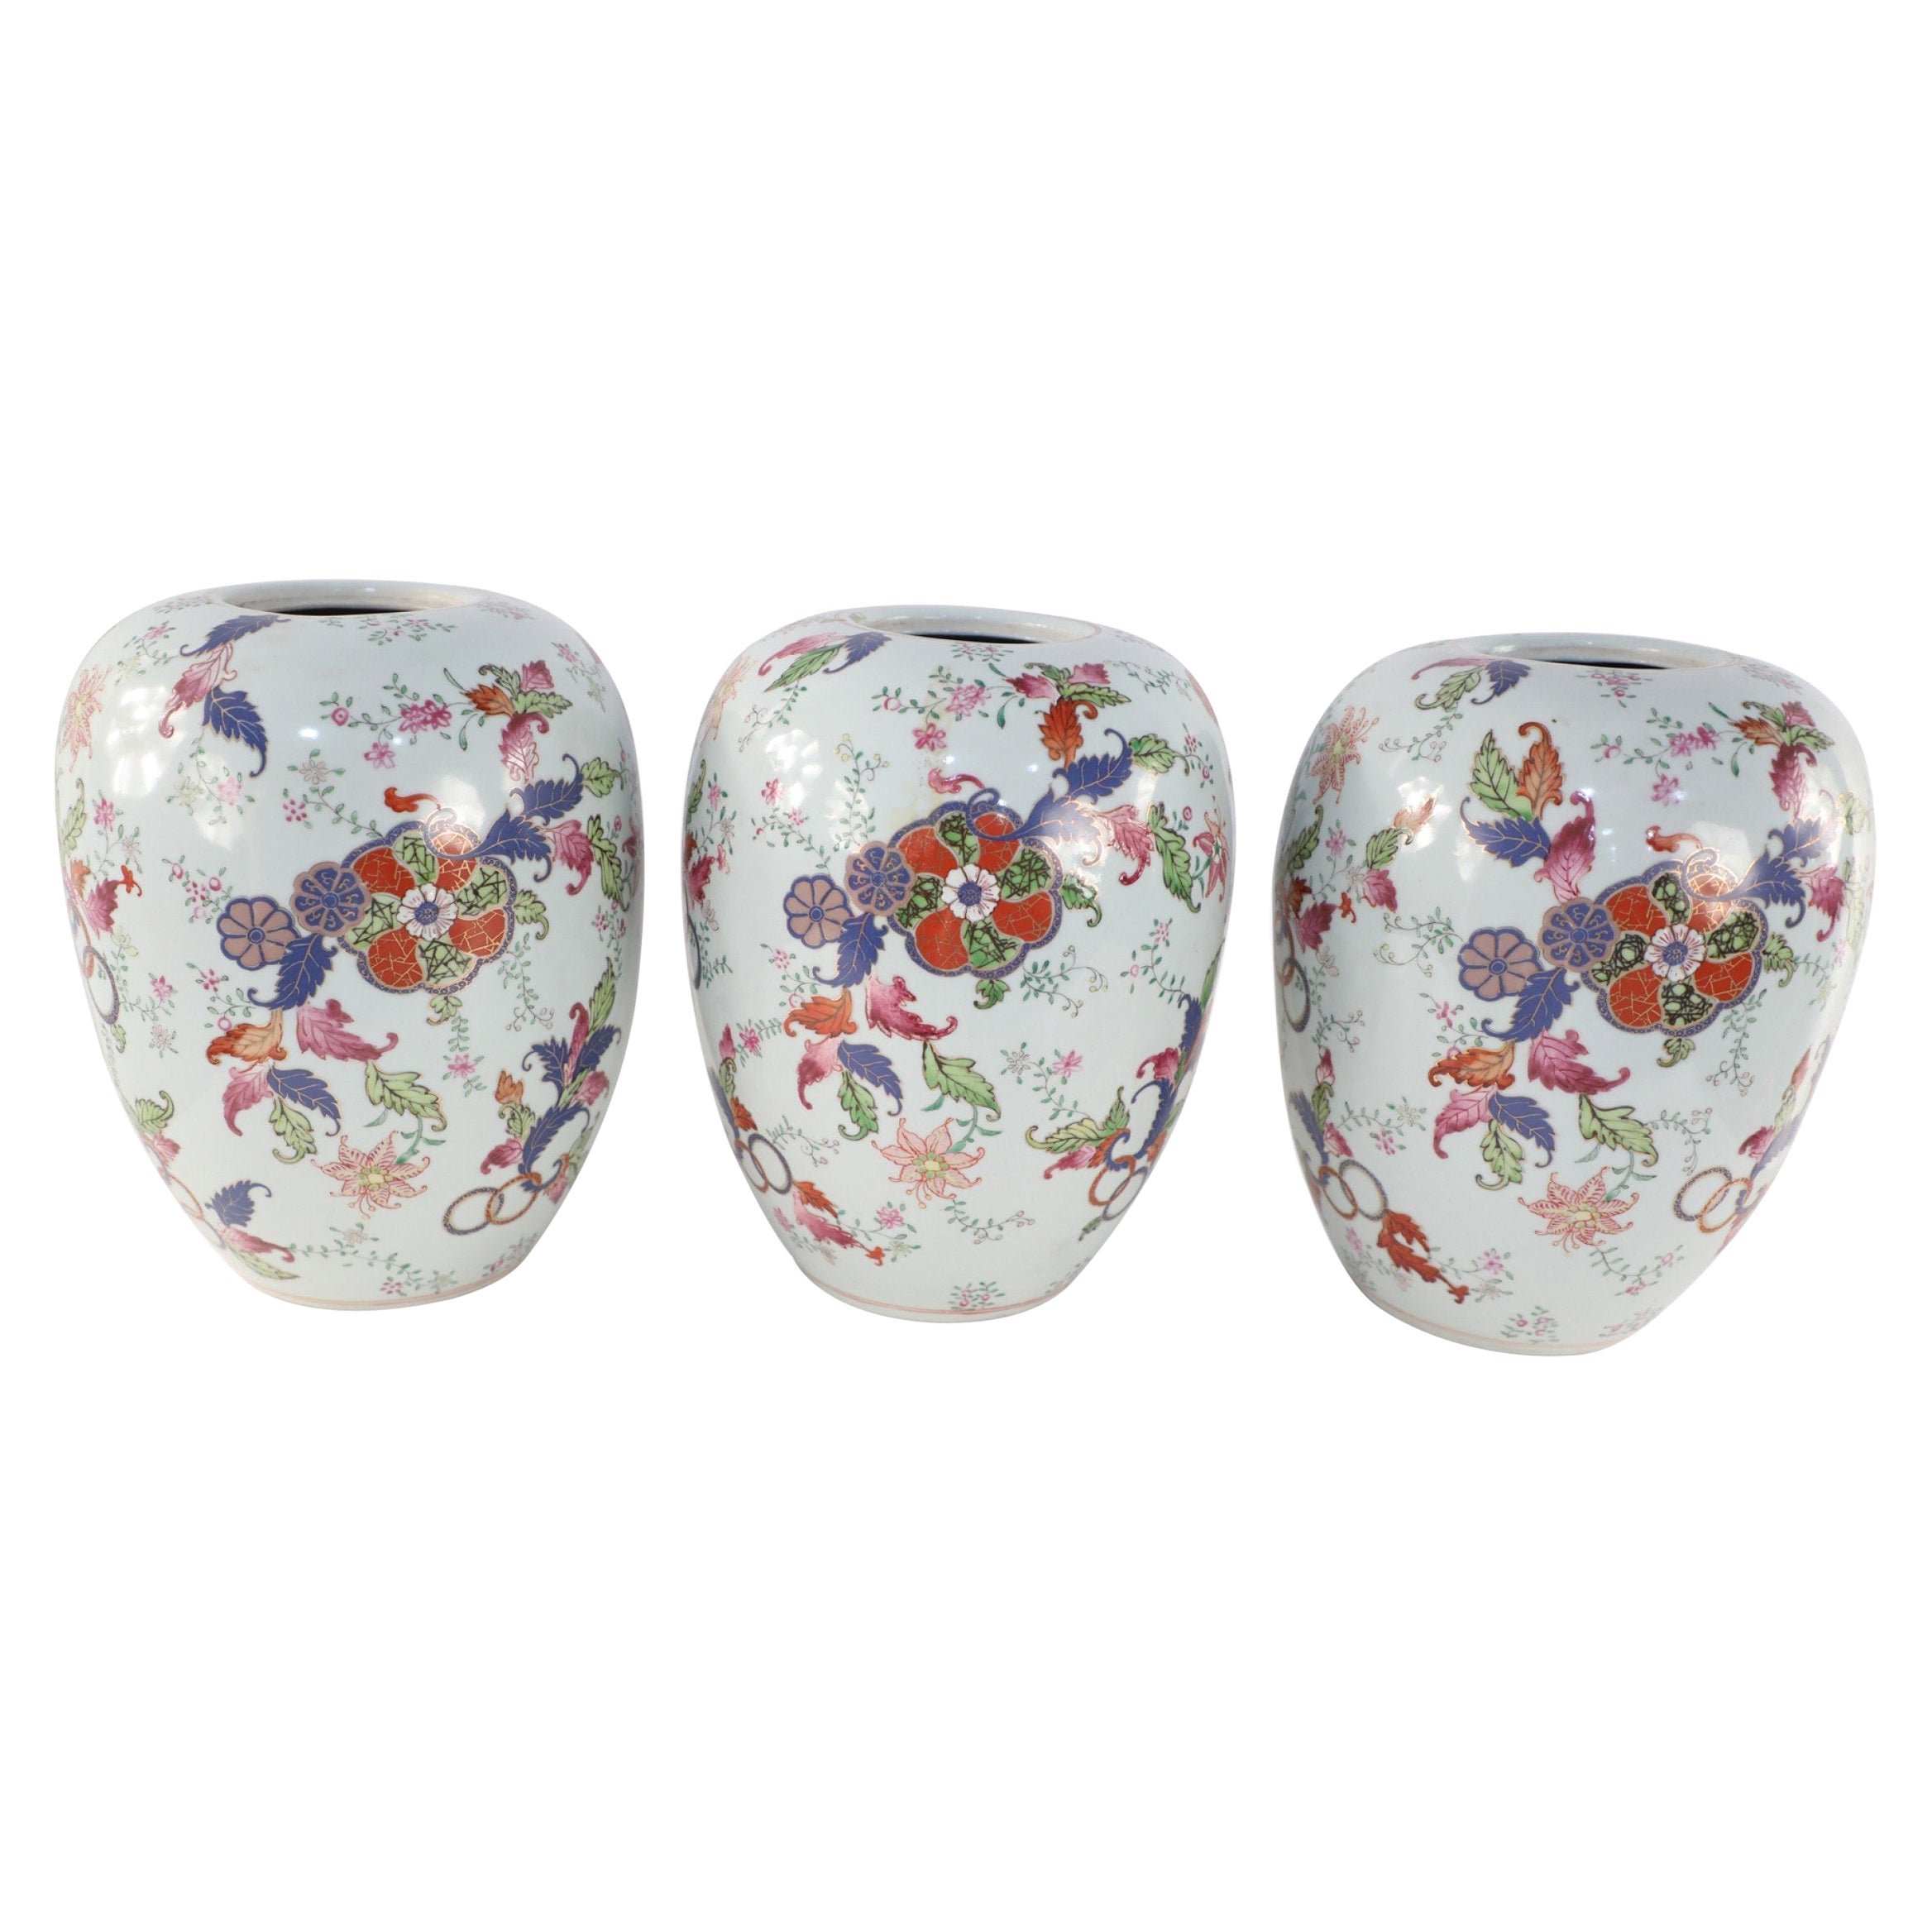 Chinesische Porzellan-Gefäße mit weißem und floralem Muster